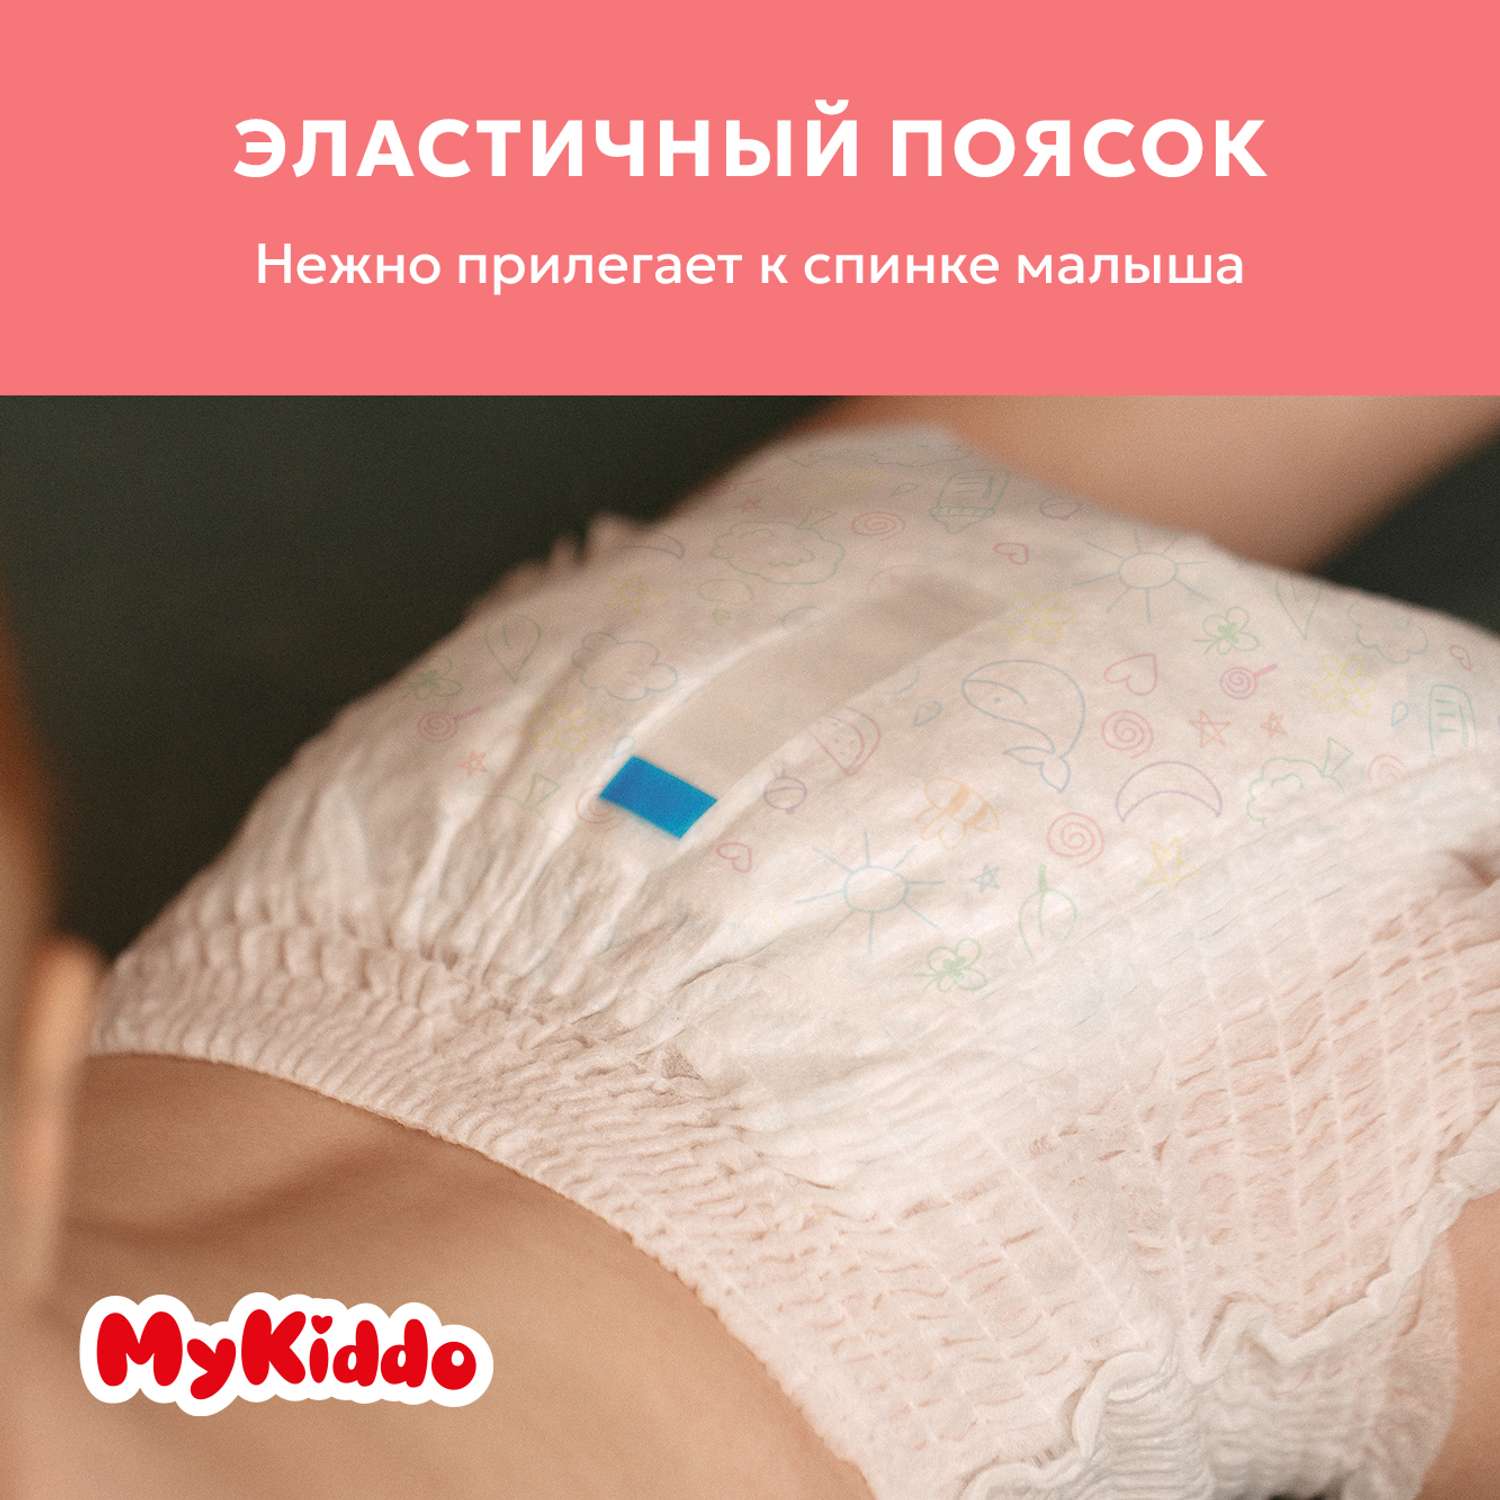 Подгузники MyKiddo Premium для новорожденных 0-6 кг размер S 3уп по 24 шт - фото 7